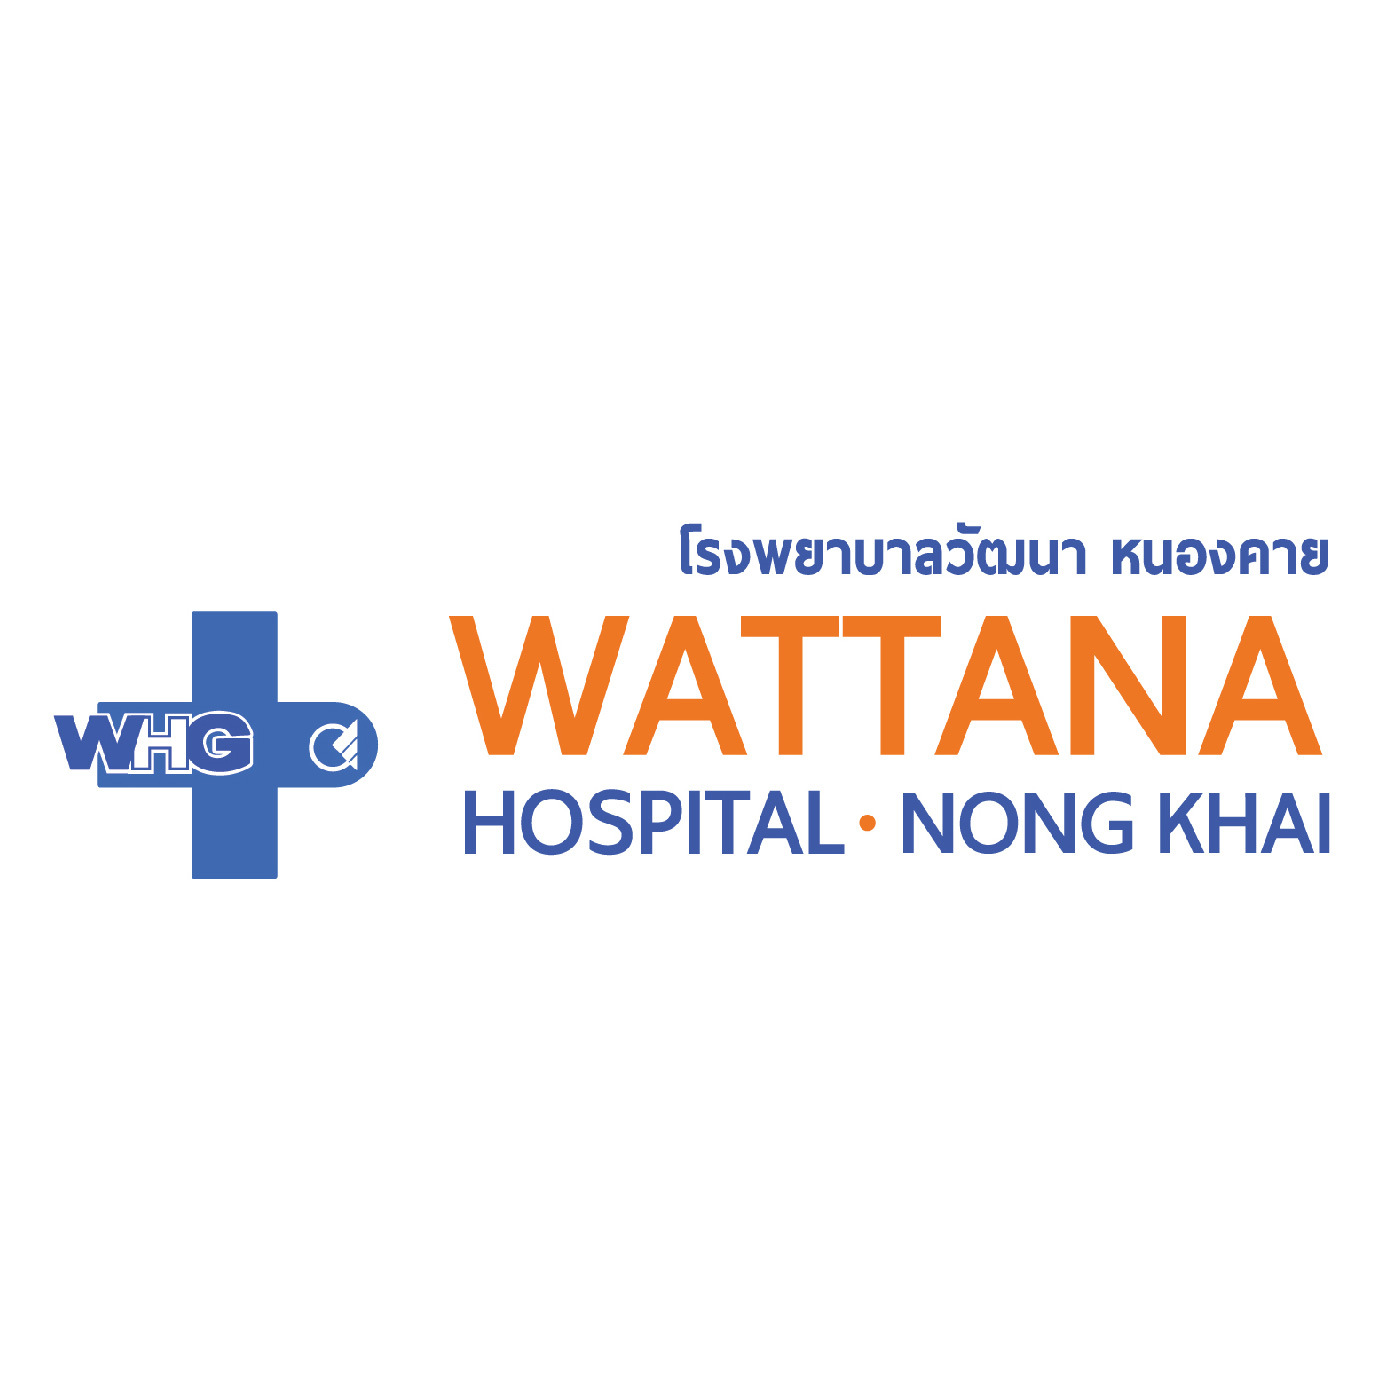 Nongkhai Wattana Hospital 01